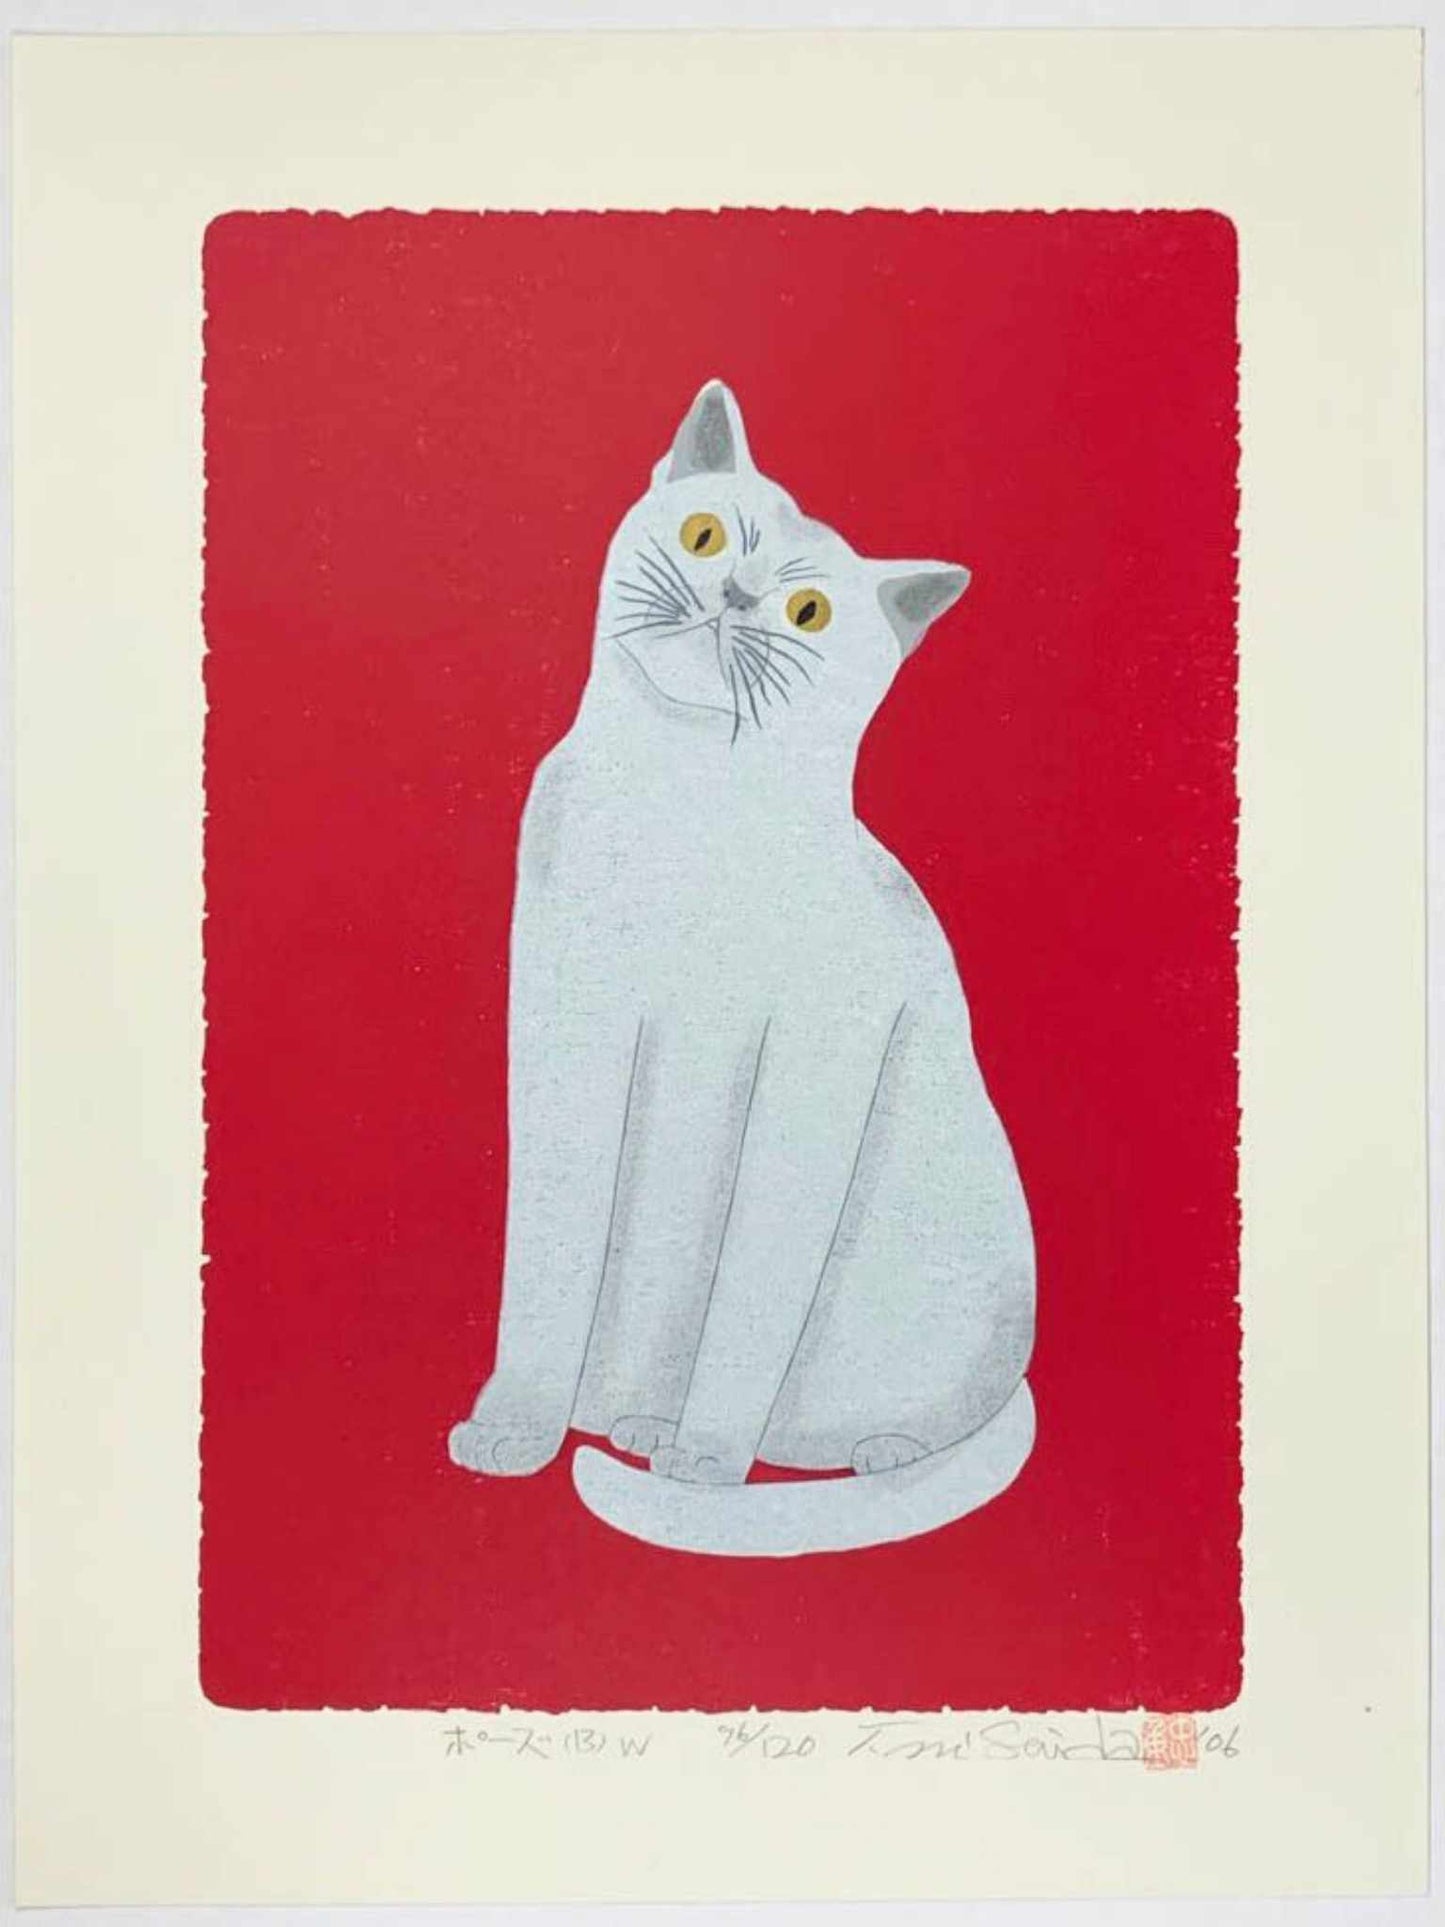 estampe japonaise de nishida chat blanc qui pose sur fond rouge